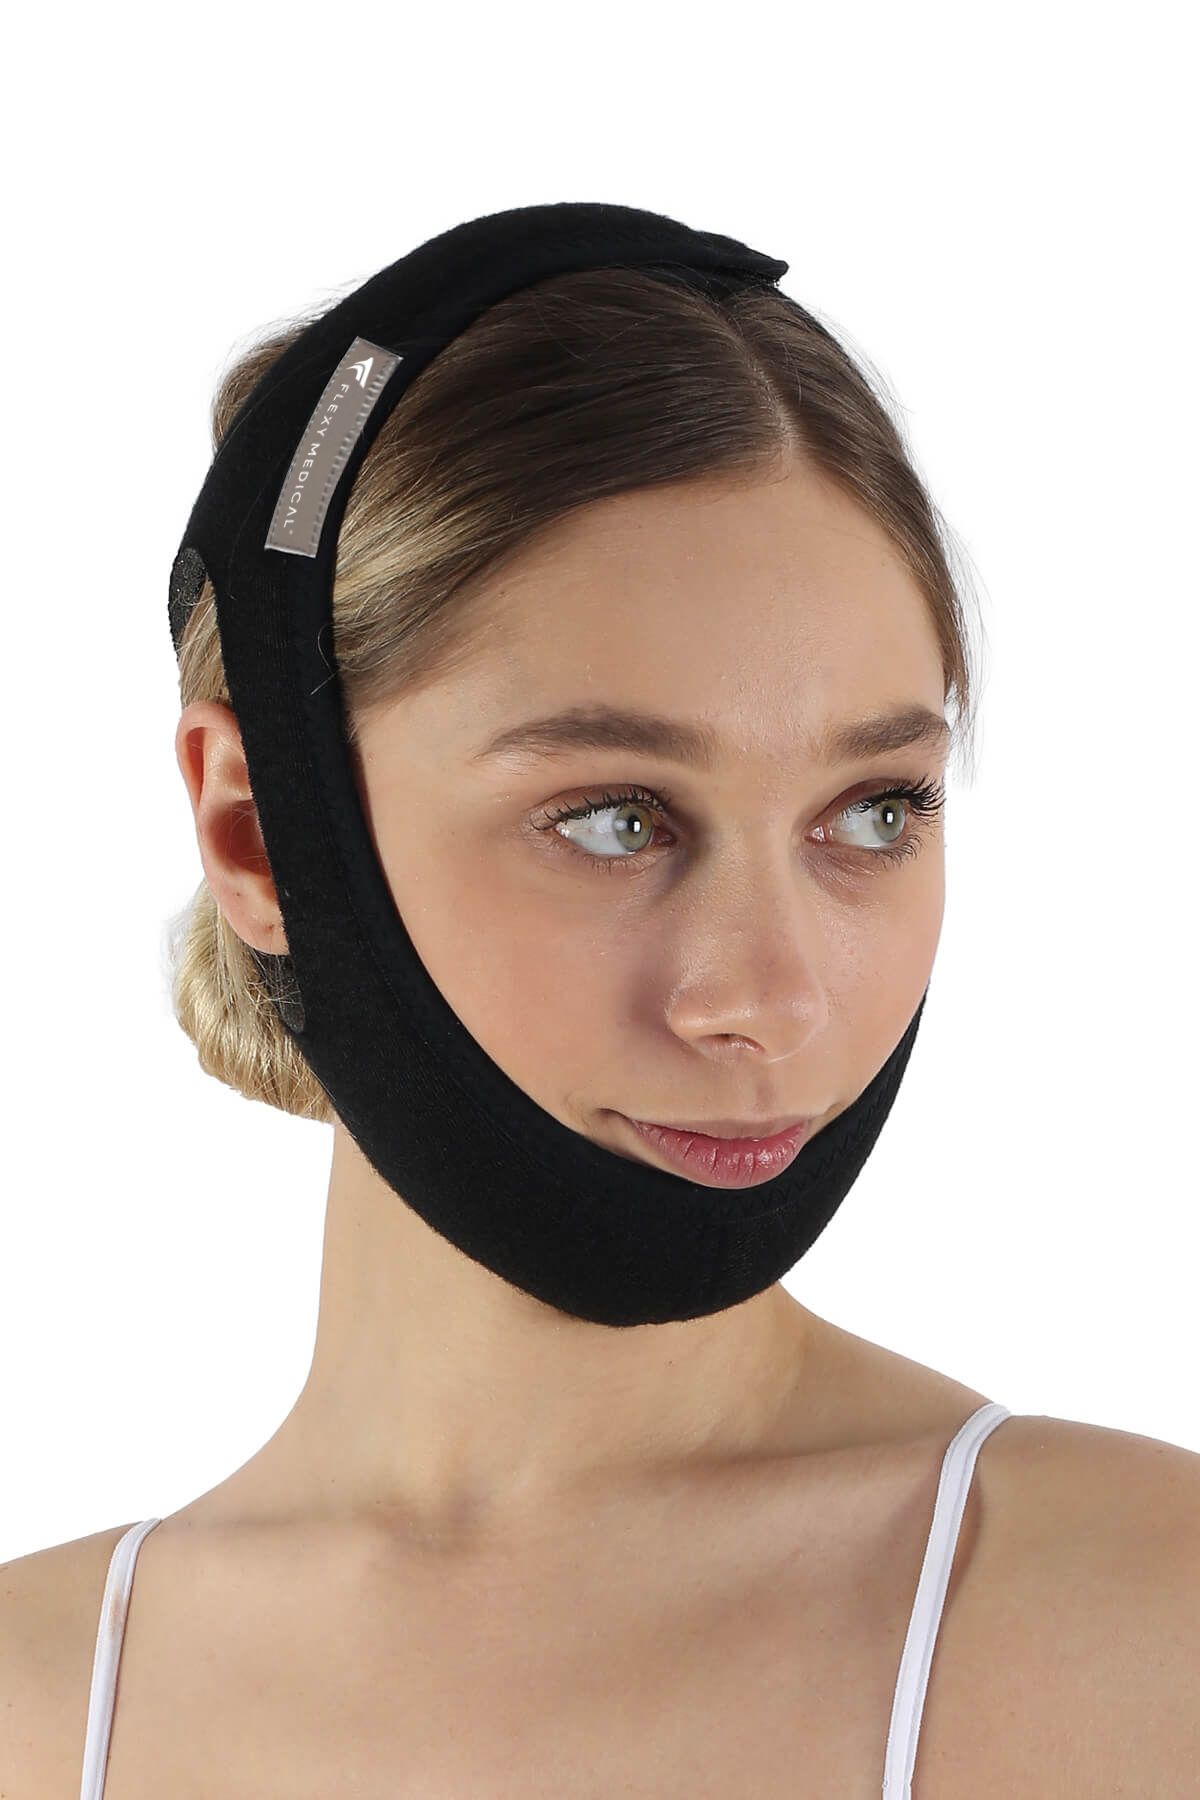 Flexy Medical Horlama Bandajı - Horlama Önleyici - Çene Destekli - Uyku Istirahat Apne Aparatı Bandı